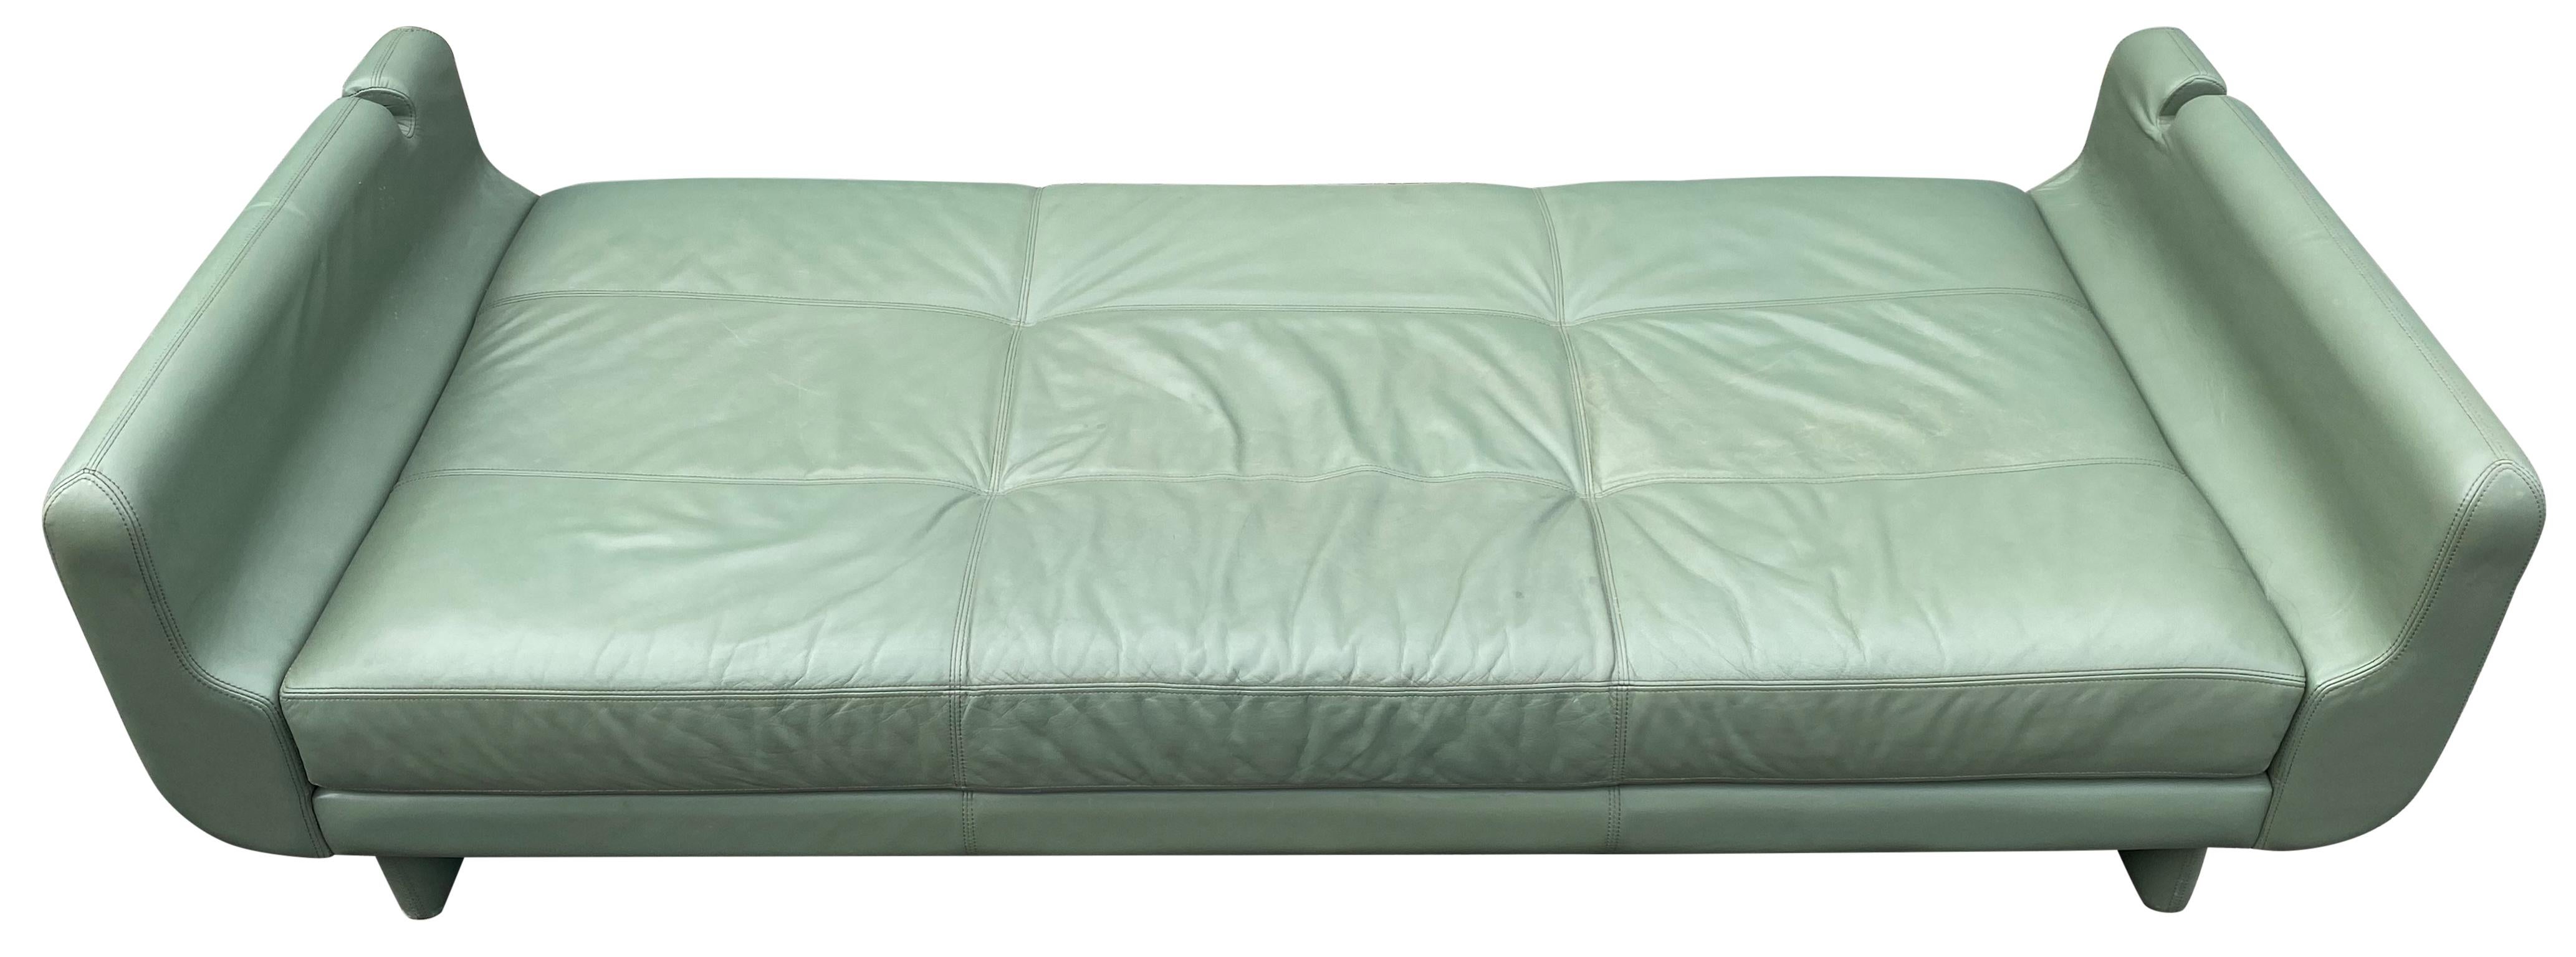 Schönes Leder Matinee Daybed Sofa von Vladimir Kagan Salbei Grünes Leder 5